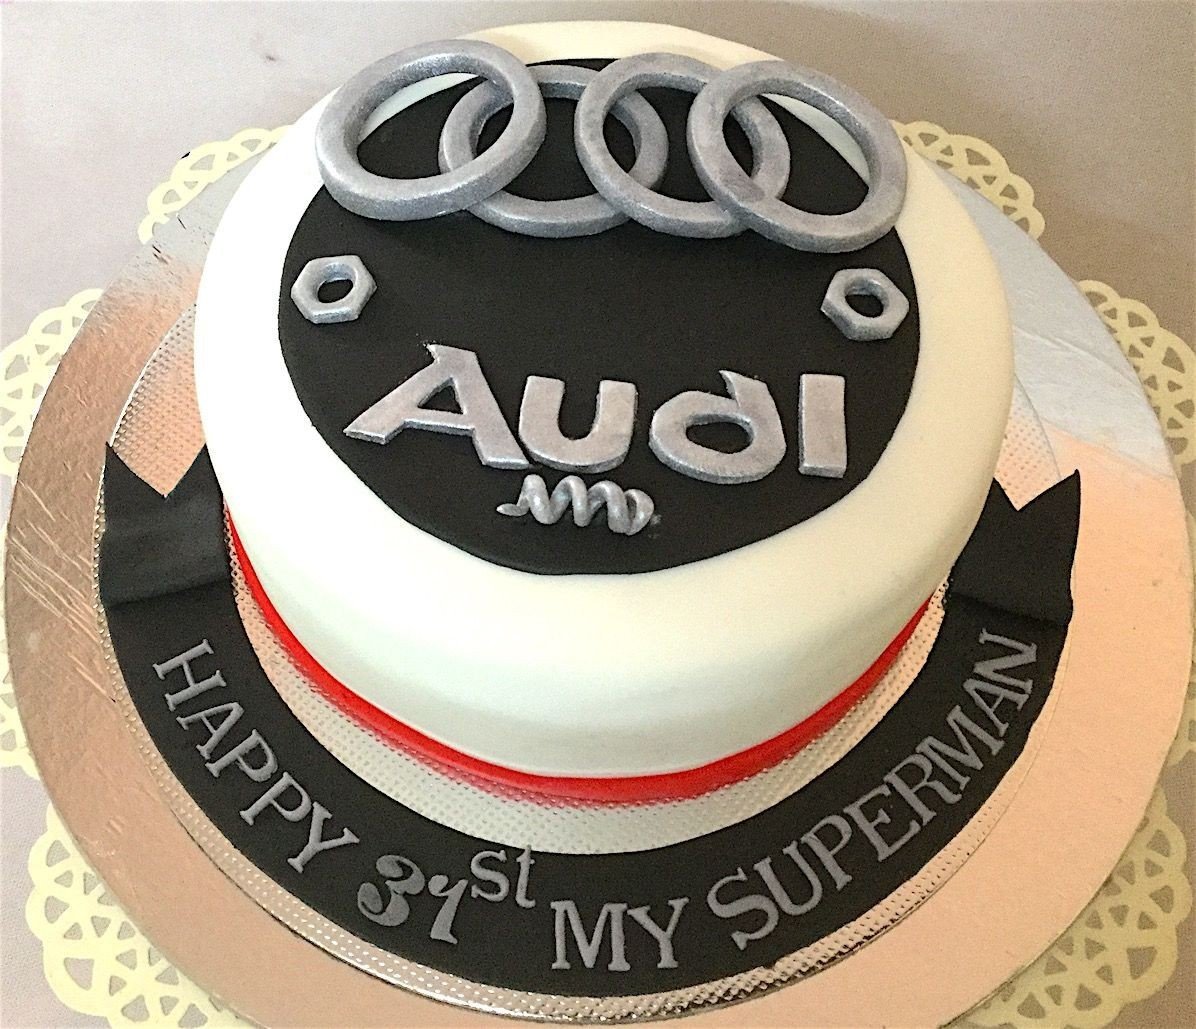 Audi R8 Spyder | I get really frustrated, I make my cake lea… | Flickr